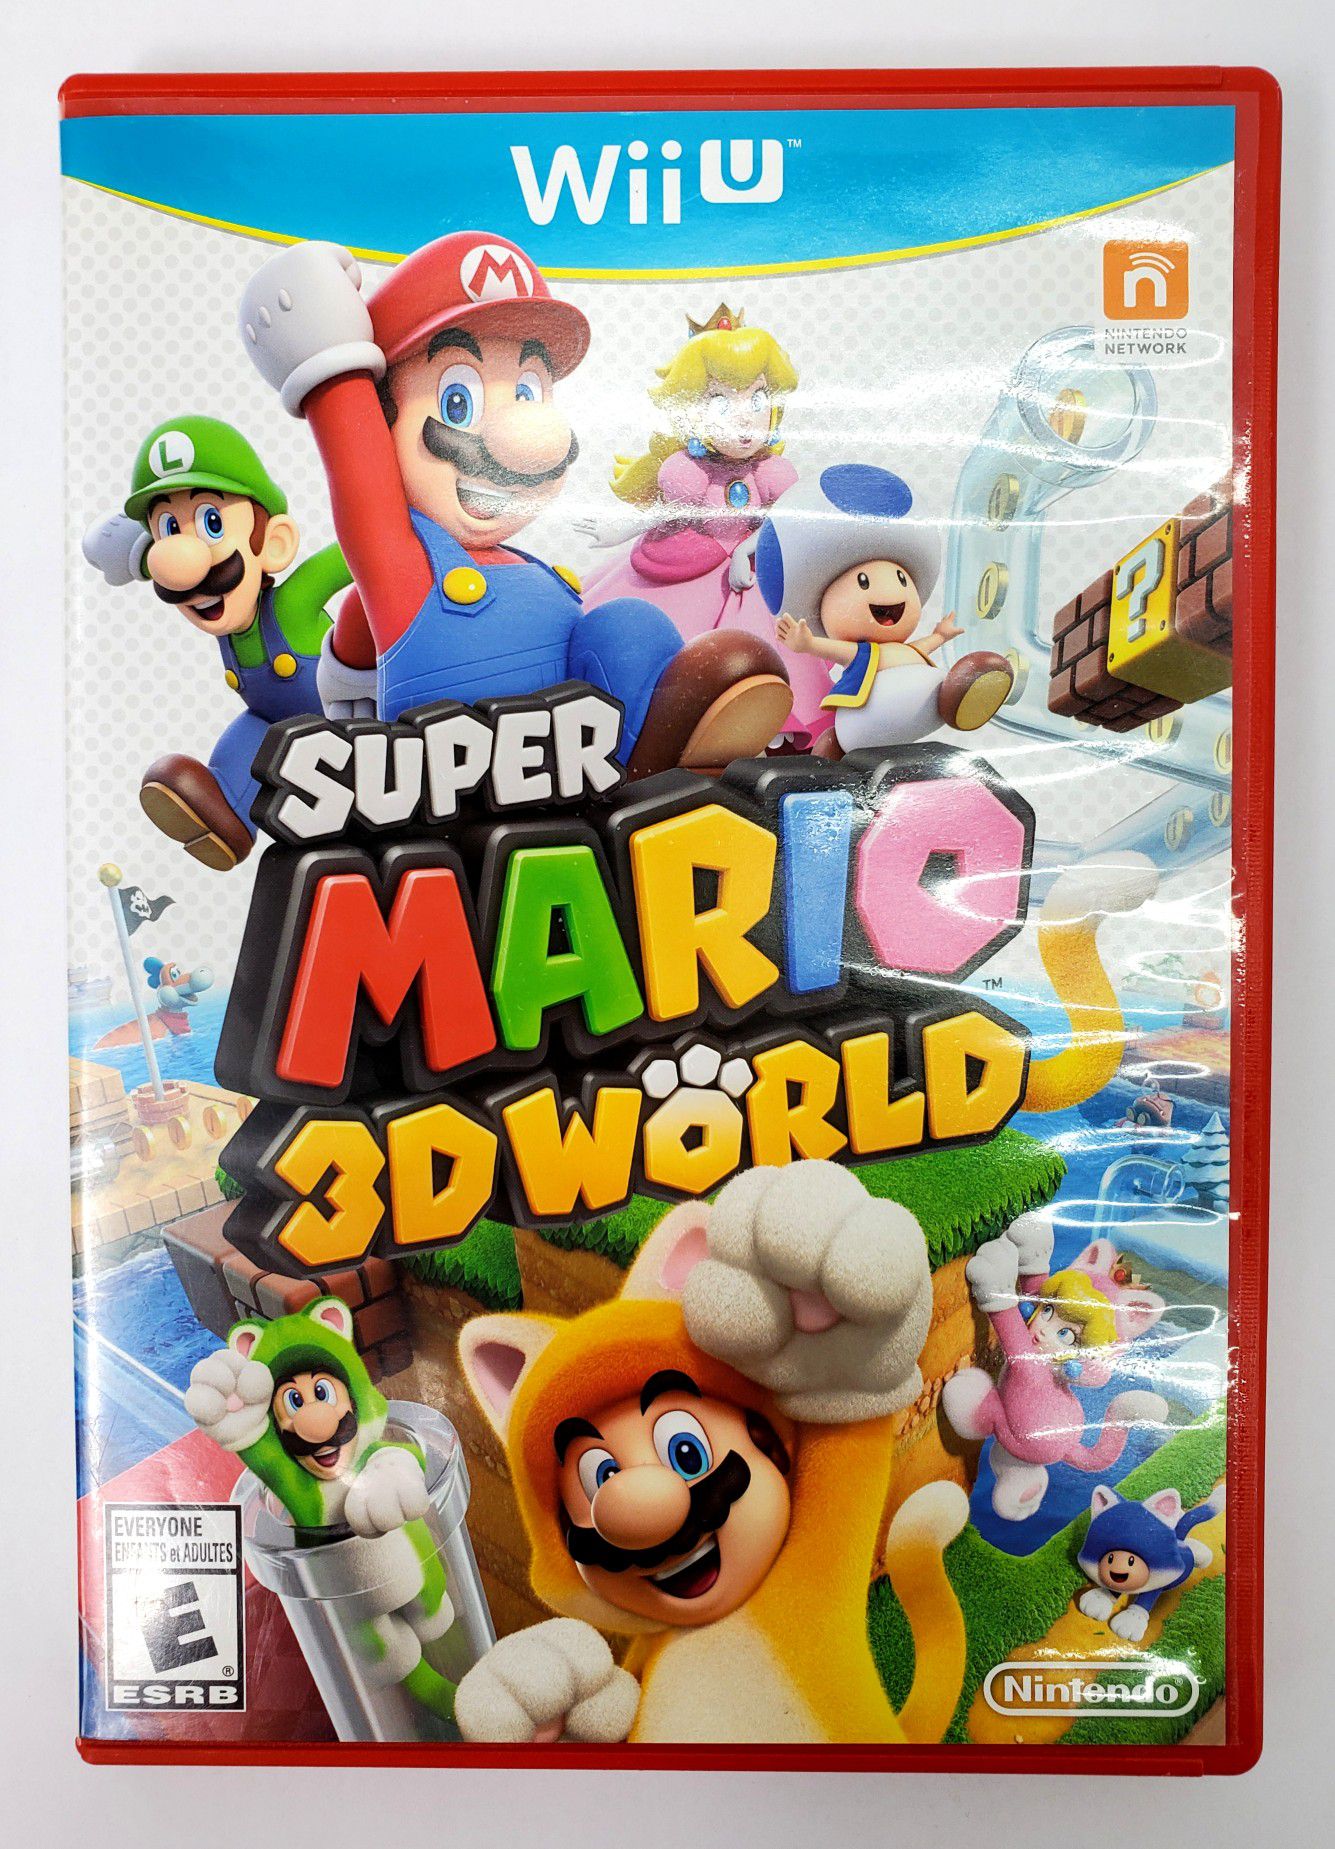 Nintendo WiiU - Super Mario 3D World (2013) - CIB